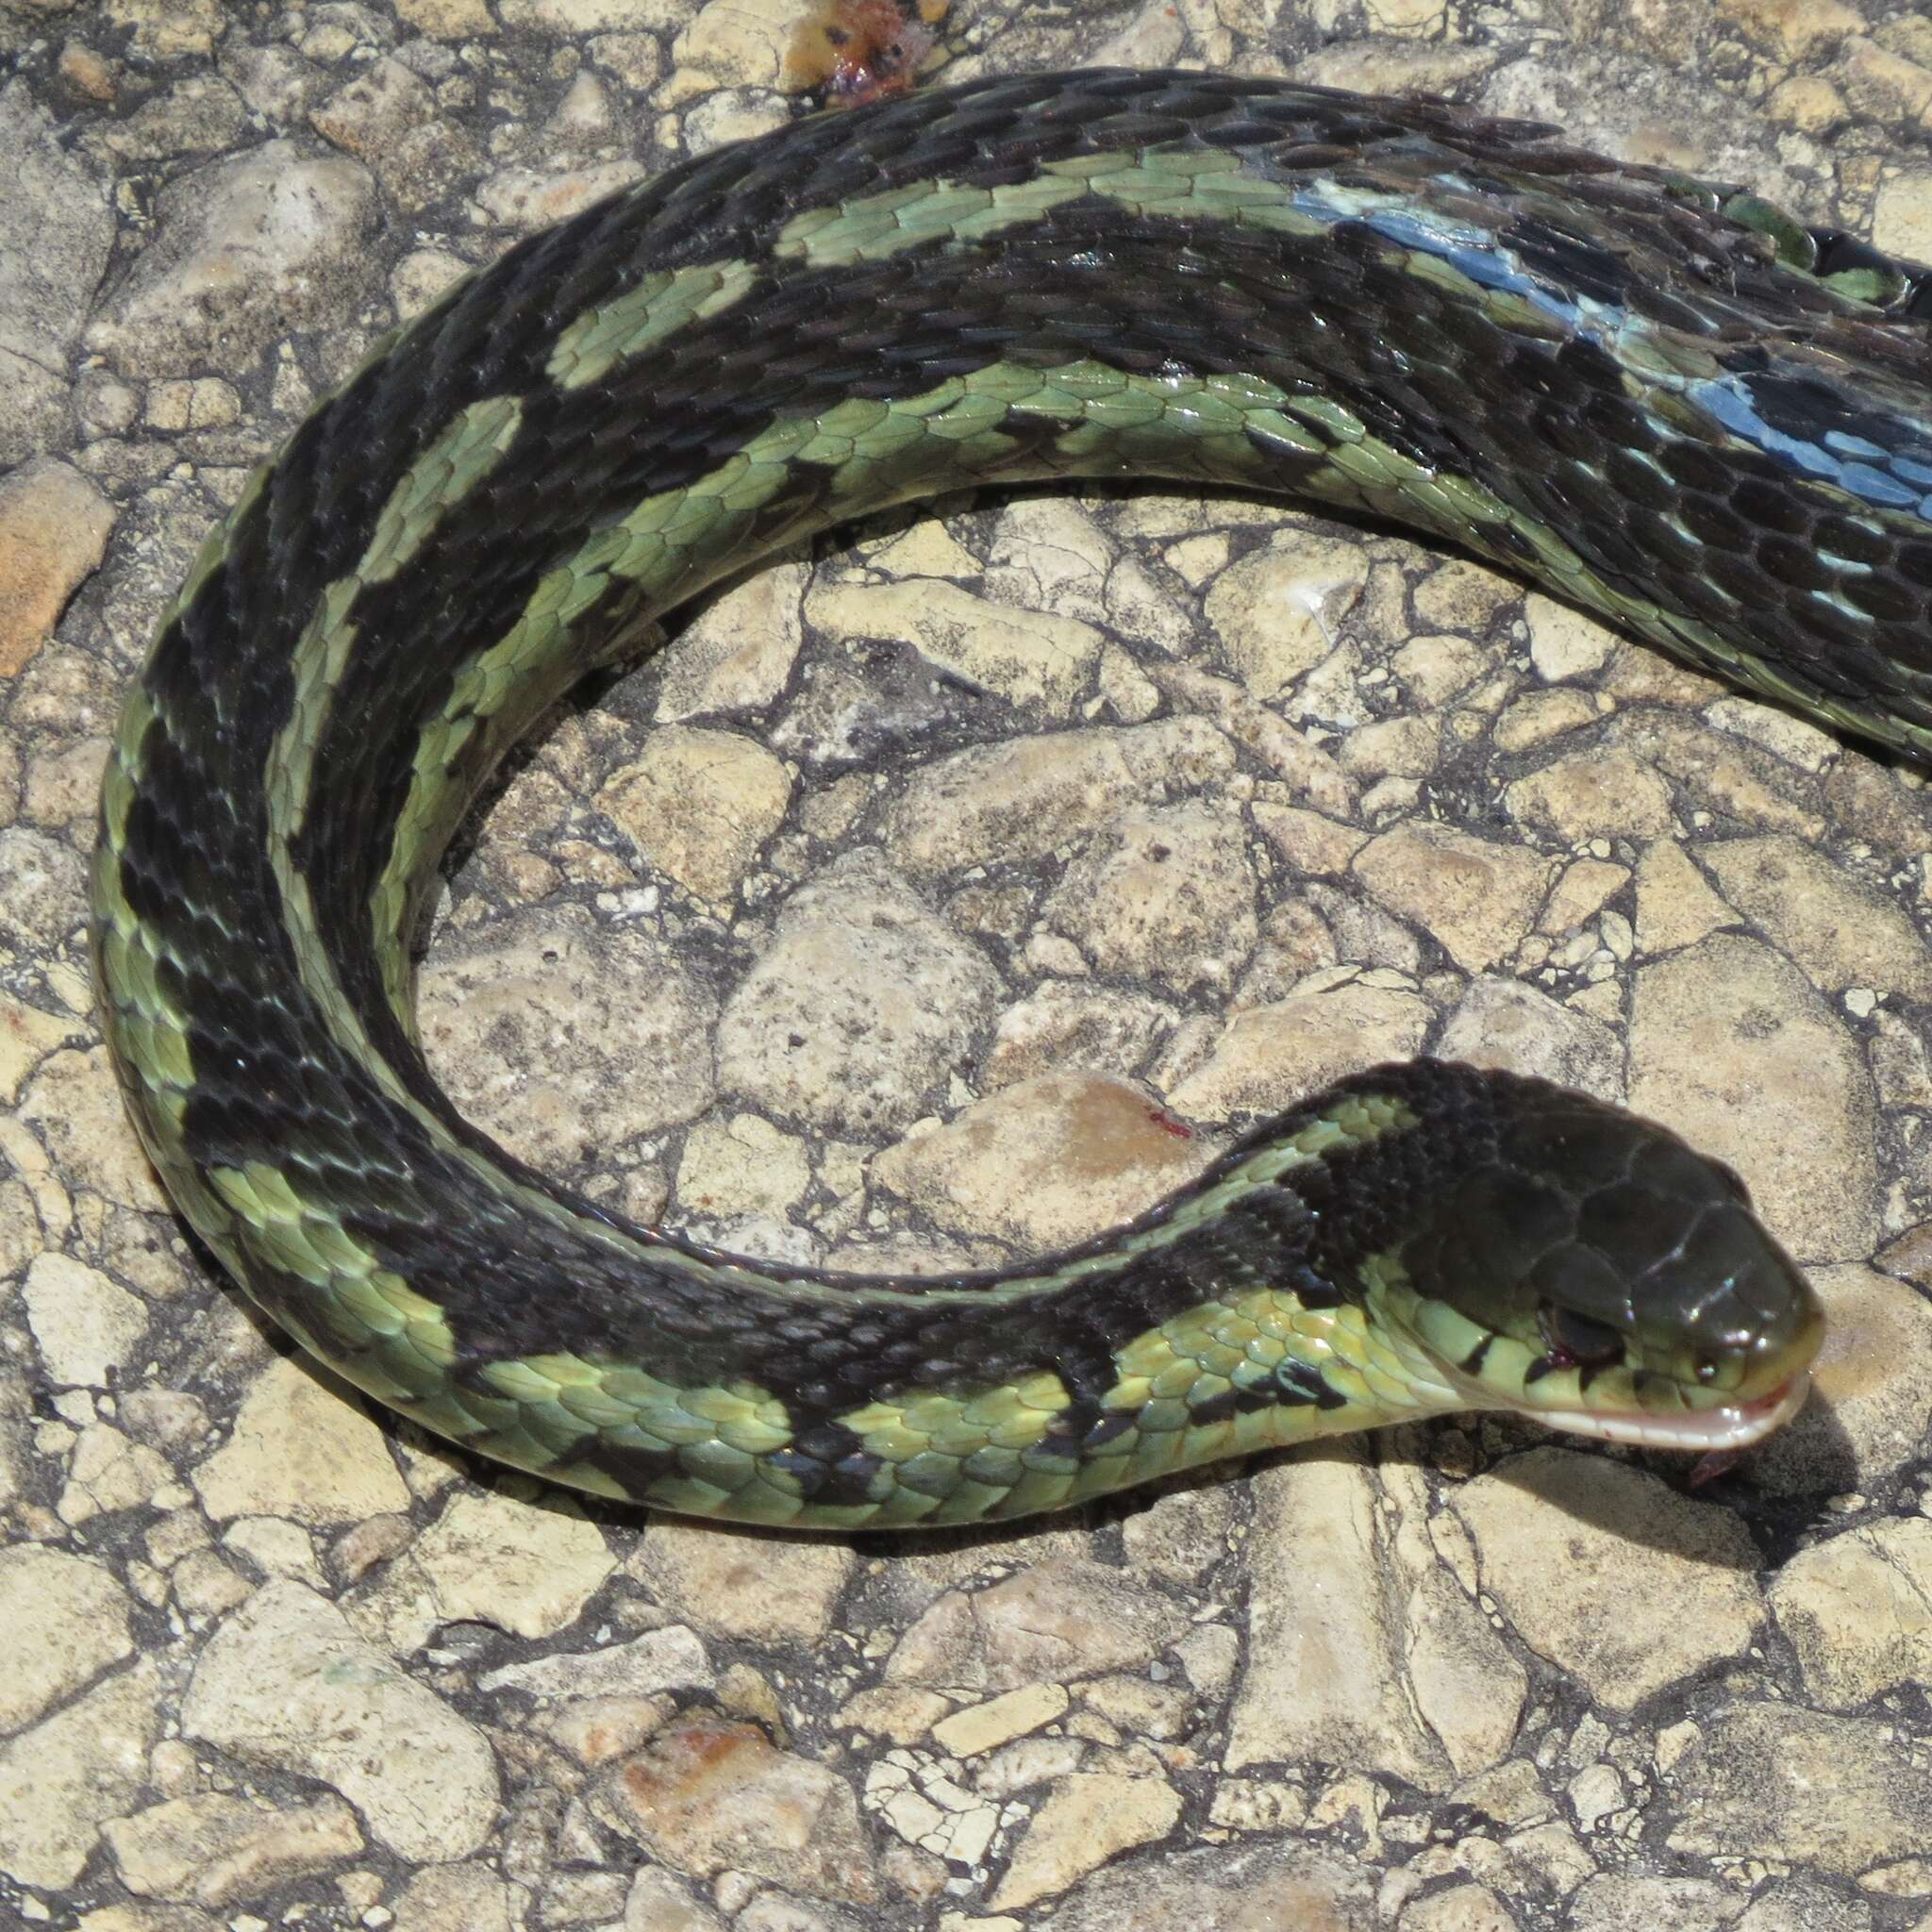 Image of Chicago Garter Snake